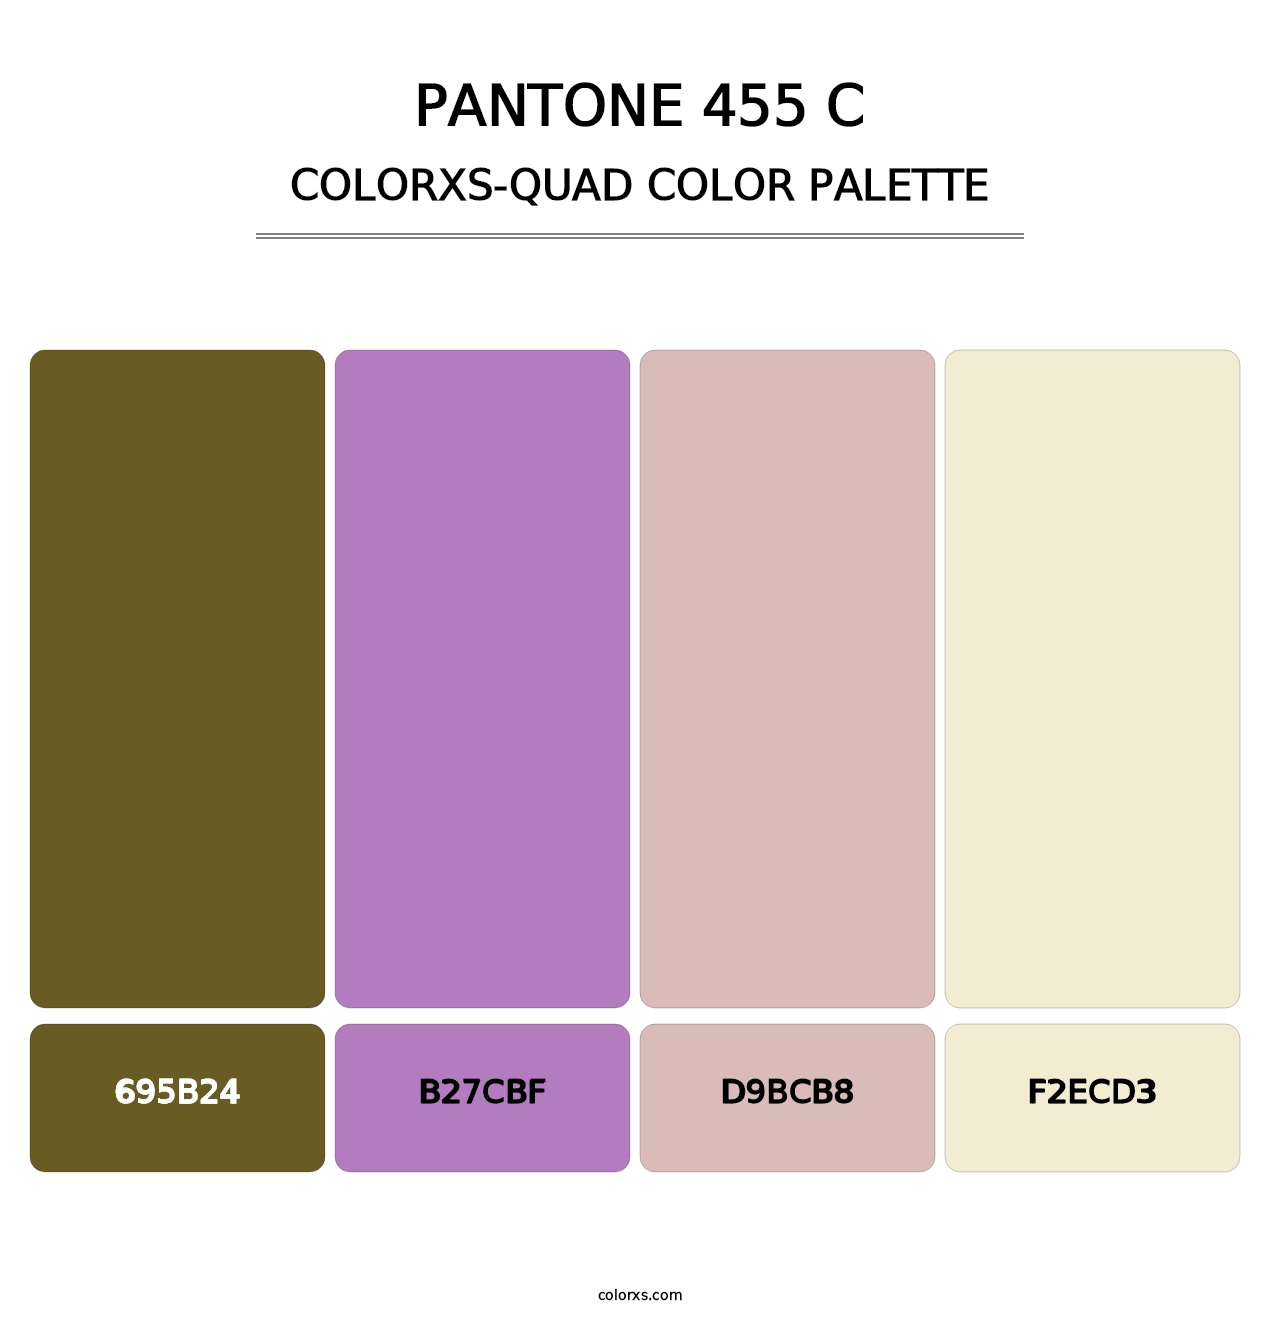 PANTONE 455 C - Colorxs Quad Palette